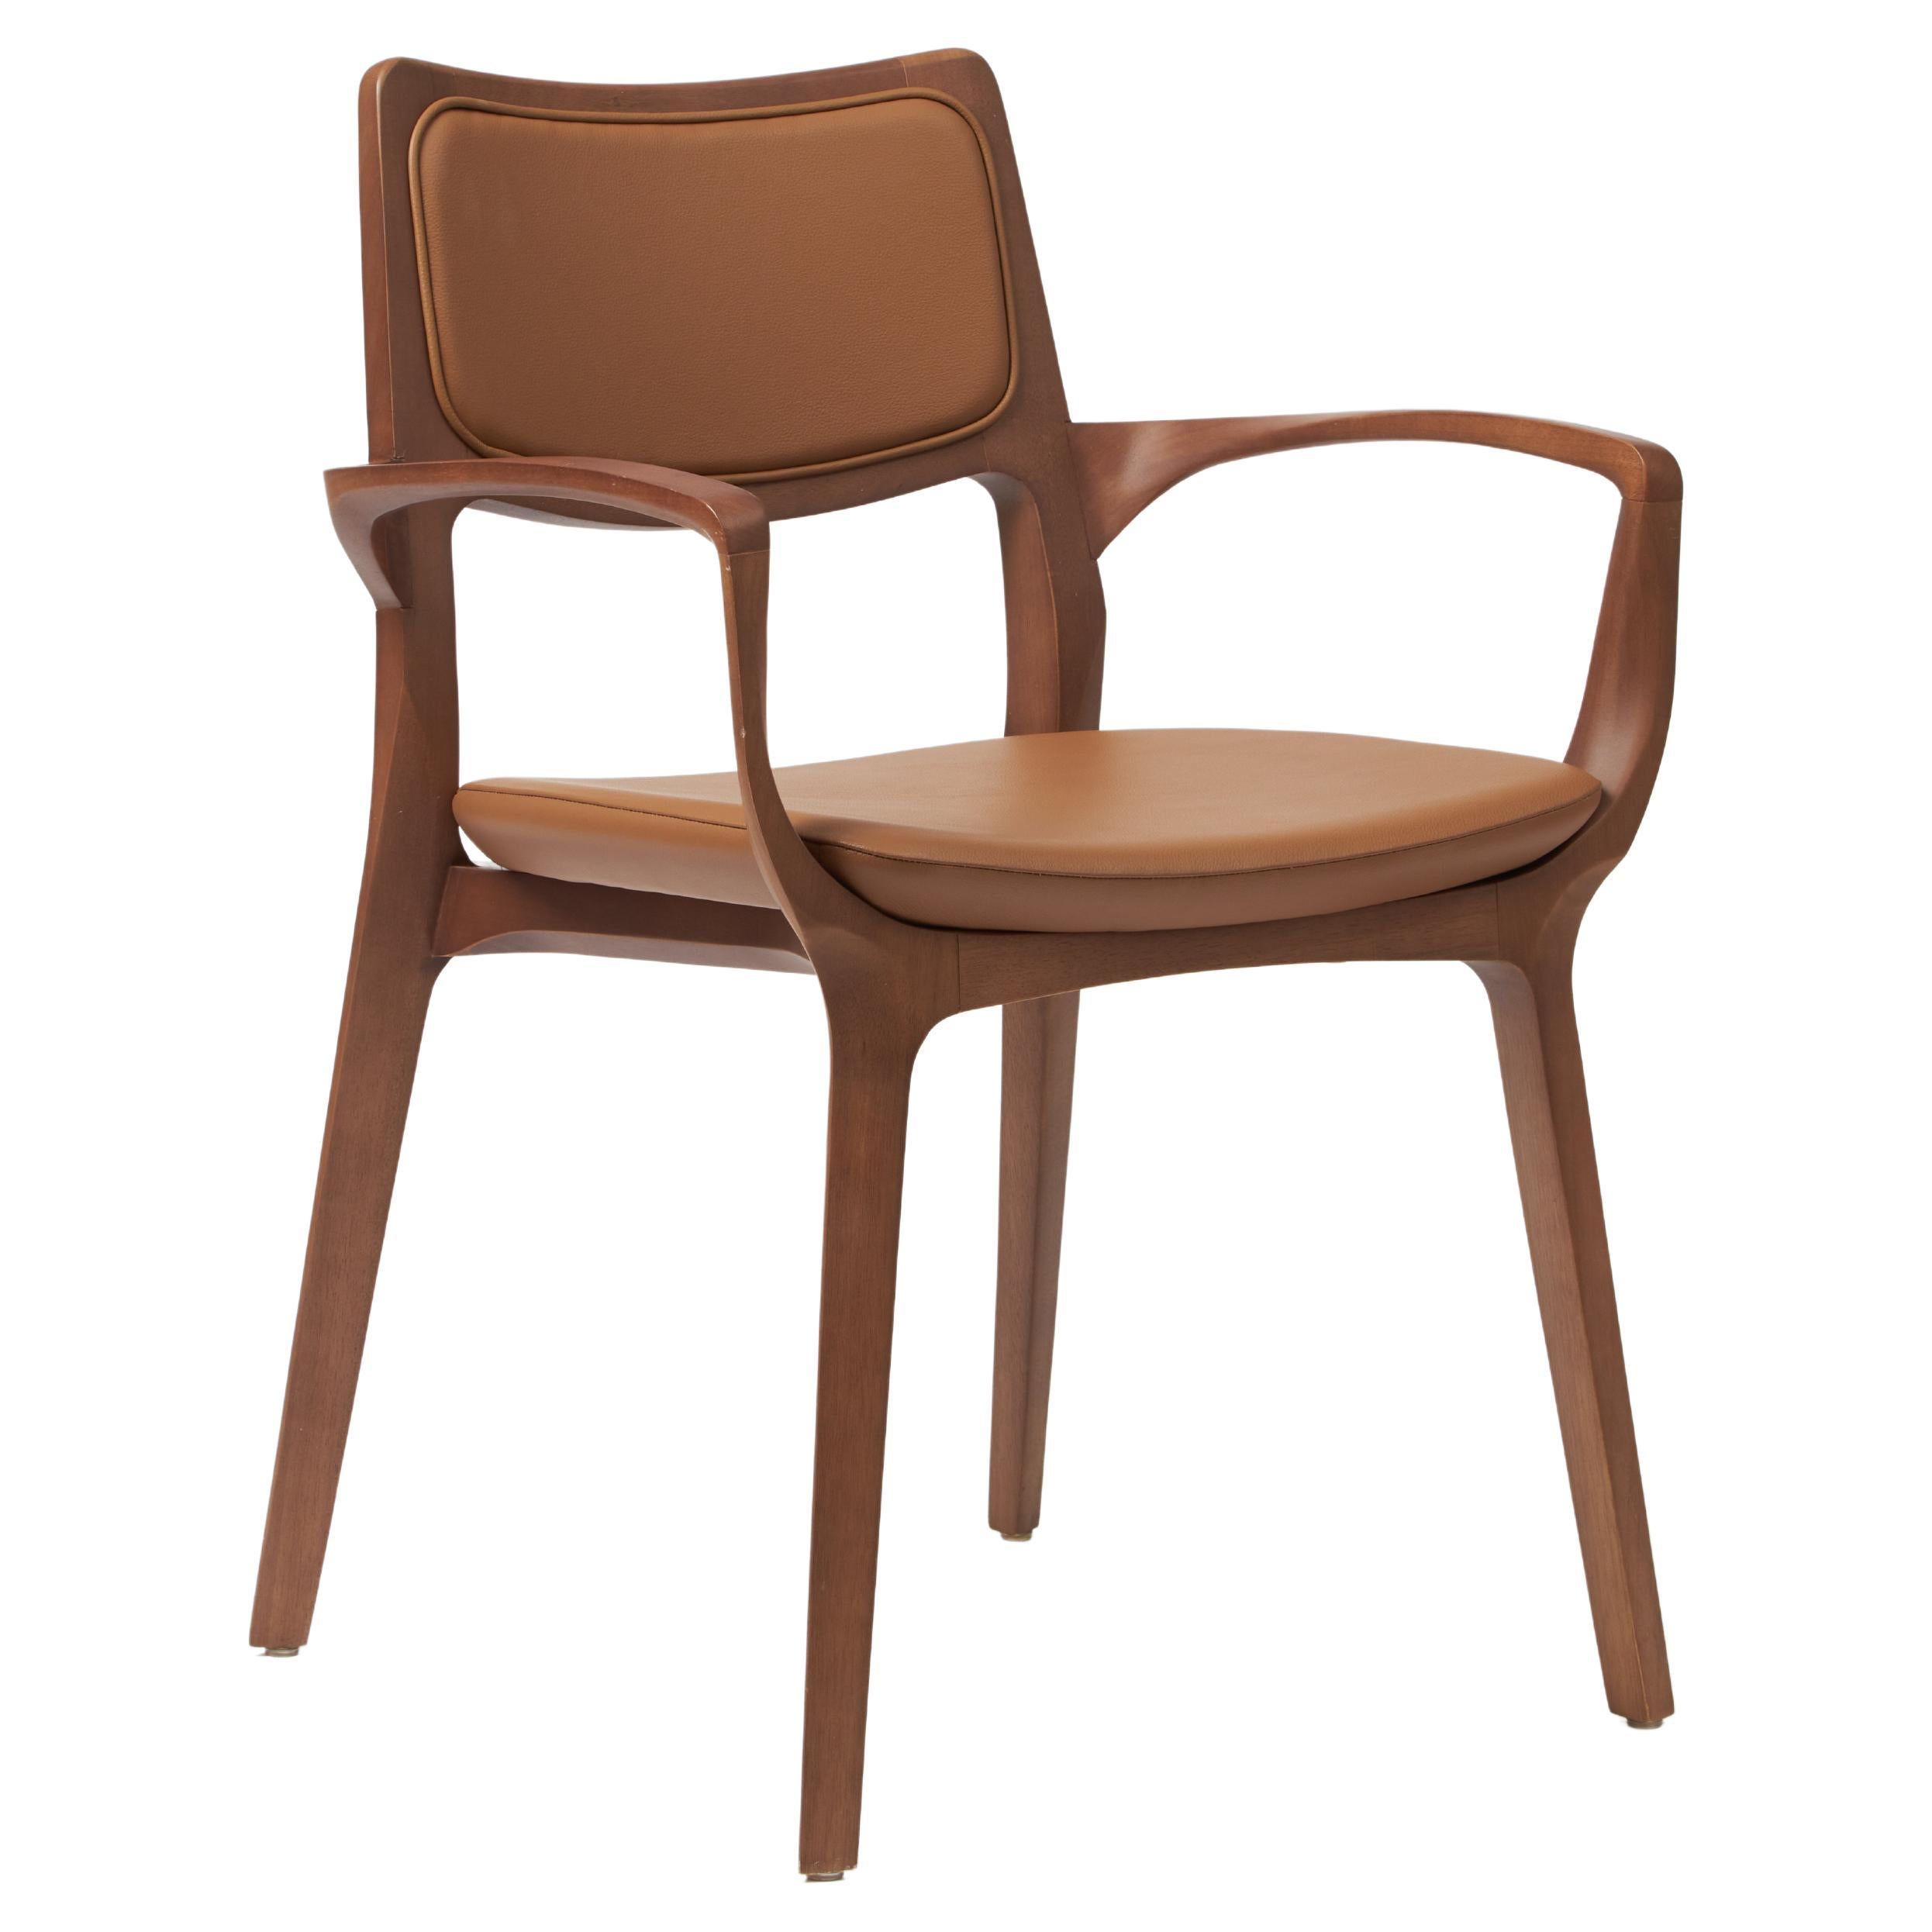 Aurora-Stuhl im modernen Stil, geformt in Armlehnen aus Nussbaumholz, Lederrückenlehne und Sitzmöbeln